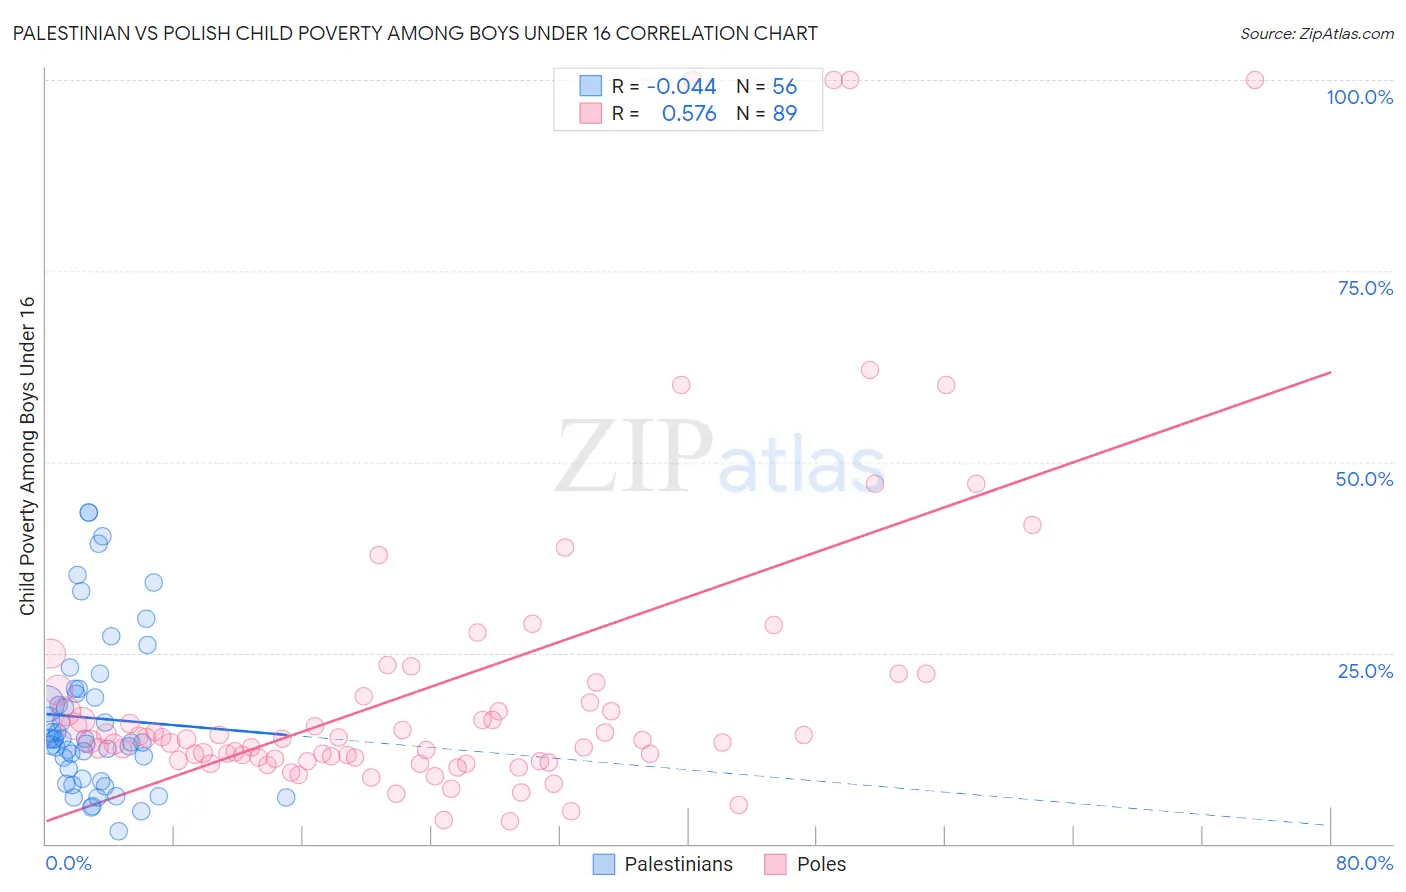 Palestinian vs Polish Child Poverty Among Boys Under 16